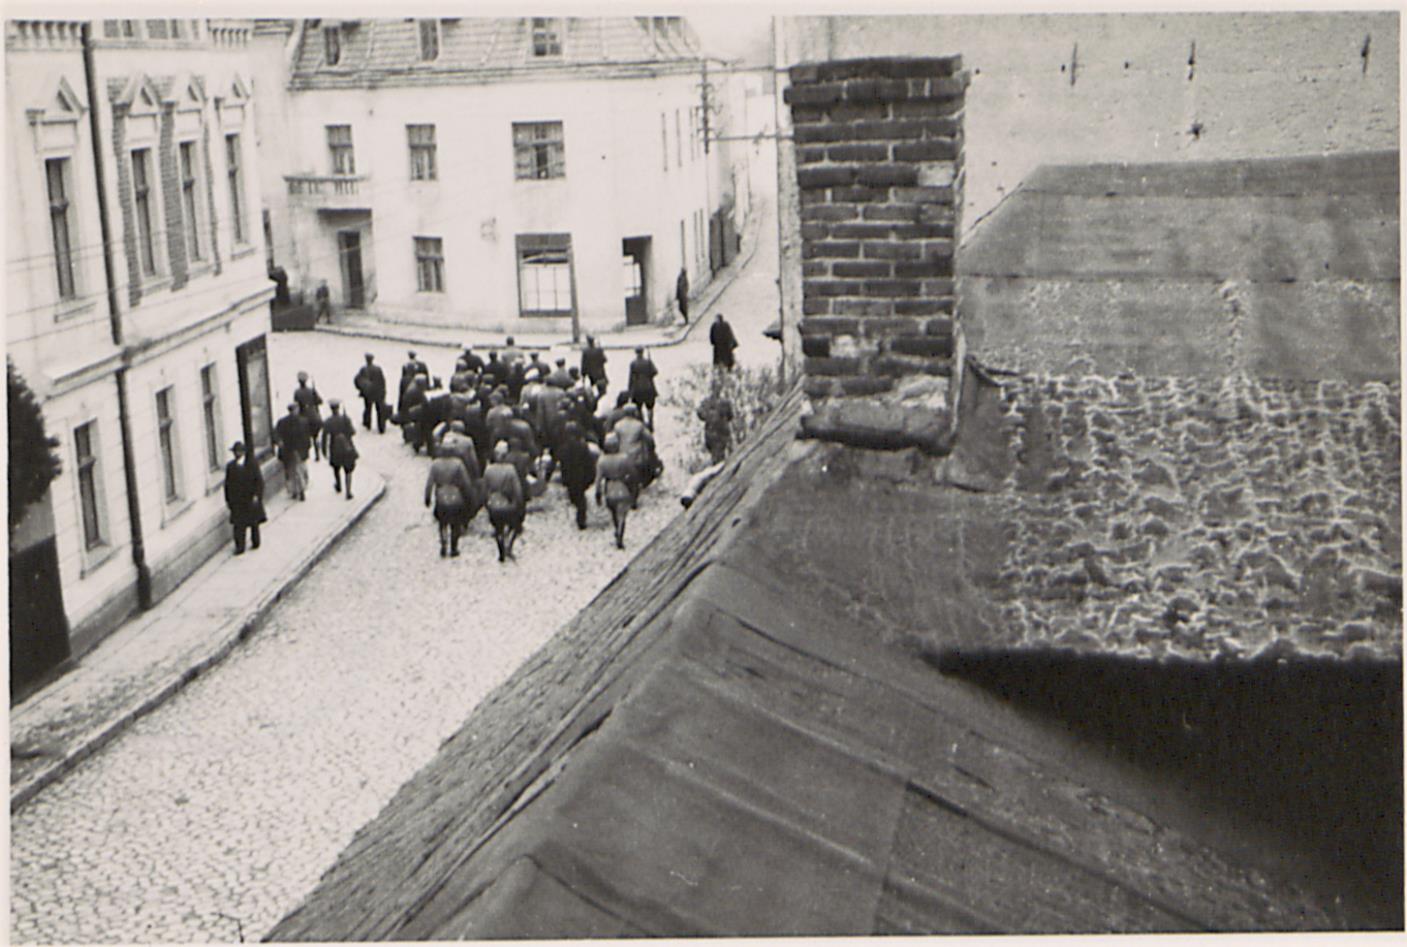 Fot. 3. Transport aresztowanych na stację kolejową (ujęcie ostatnie). Źródło: I. Z. Dok. IV – 132.